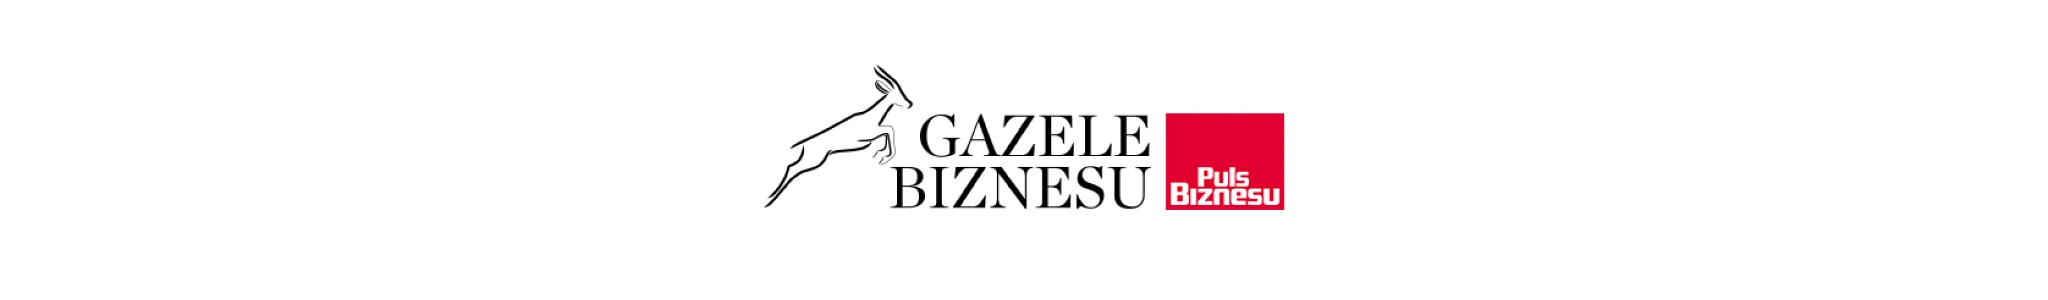 gazele-biznesu-award-press-release_logos